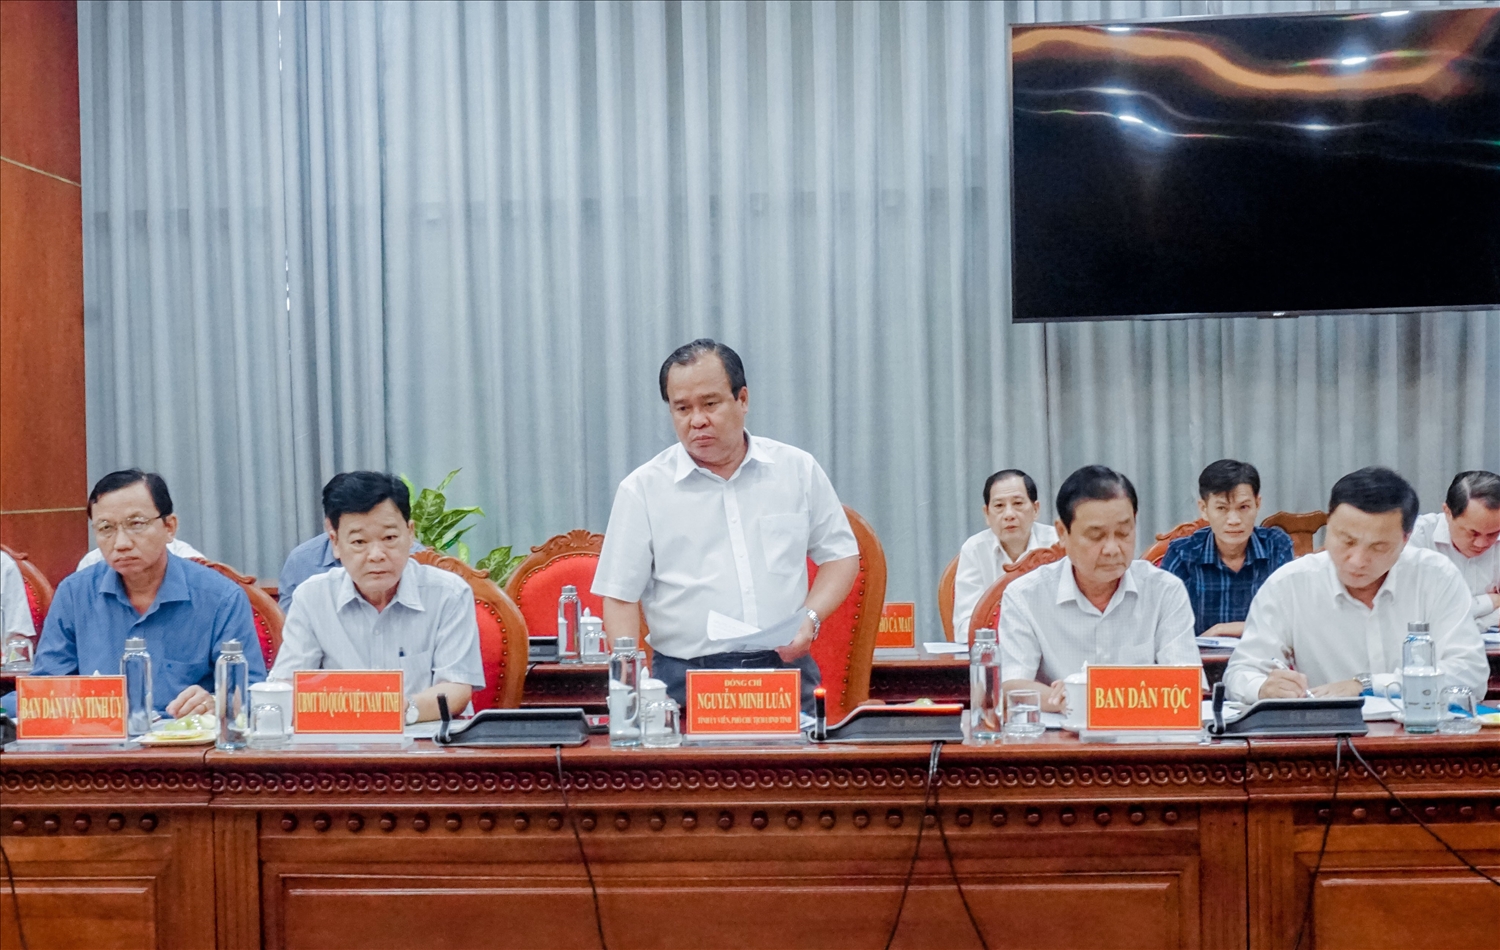 Ông Nguyễn Minh Luân Phó Chủ tịch UBND tỉnh Cà Mau phát biểu tại buổi triển khai quyết định thanh tra 